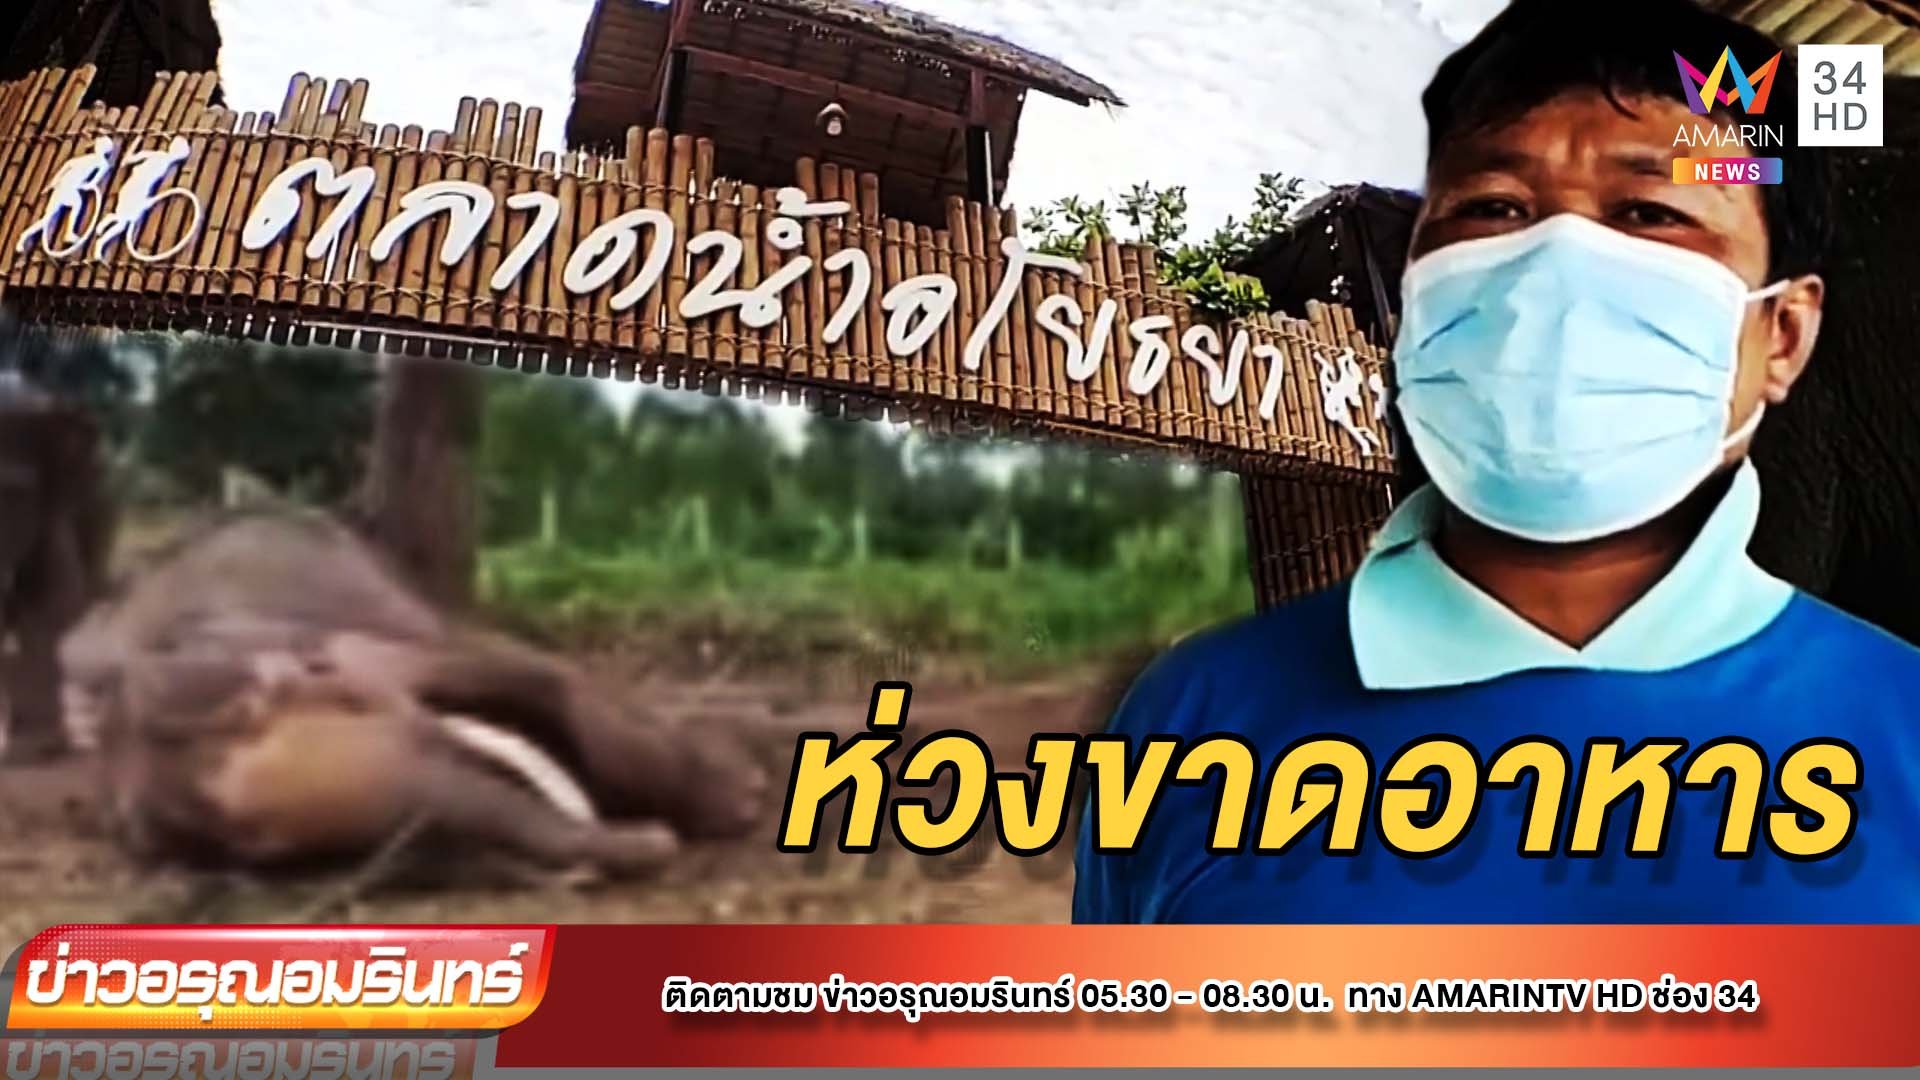 น่าห่วง! ช้างตลาดน้ำอโยธยาขาดอาหาร หลังนักท่องเที่ยวหาย | ข่าวอรุณอมรินทร์ | 1 ก.ย. 64 | AMARIN TVHD34